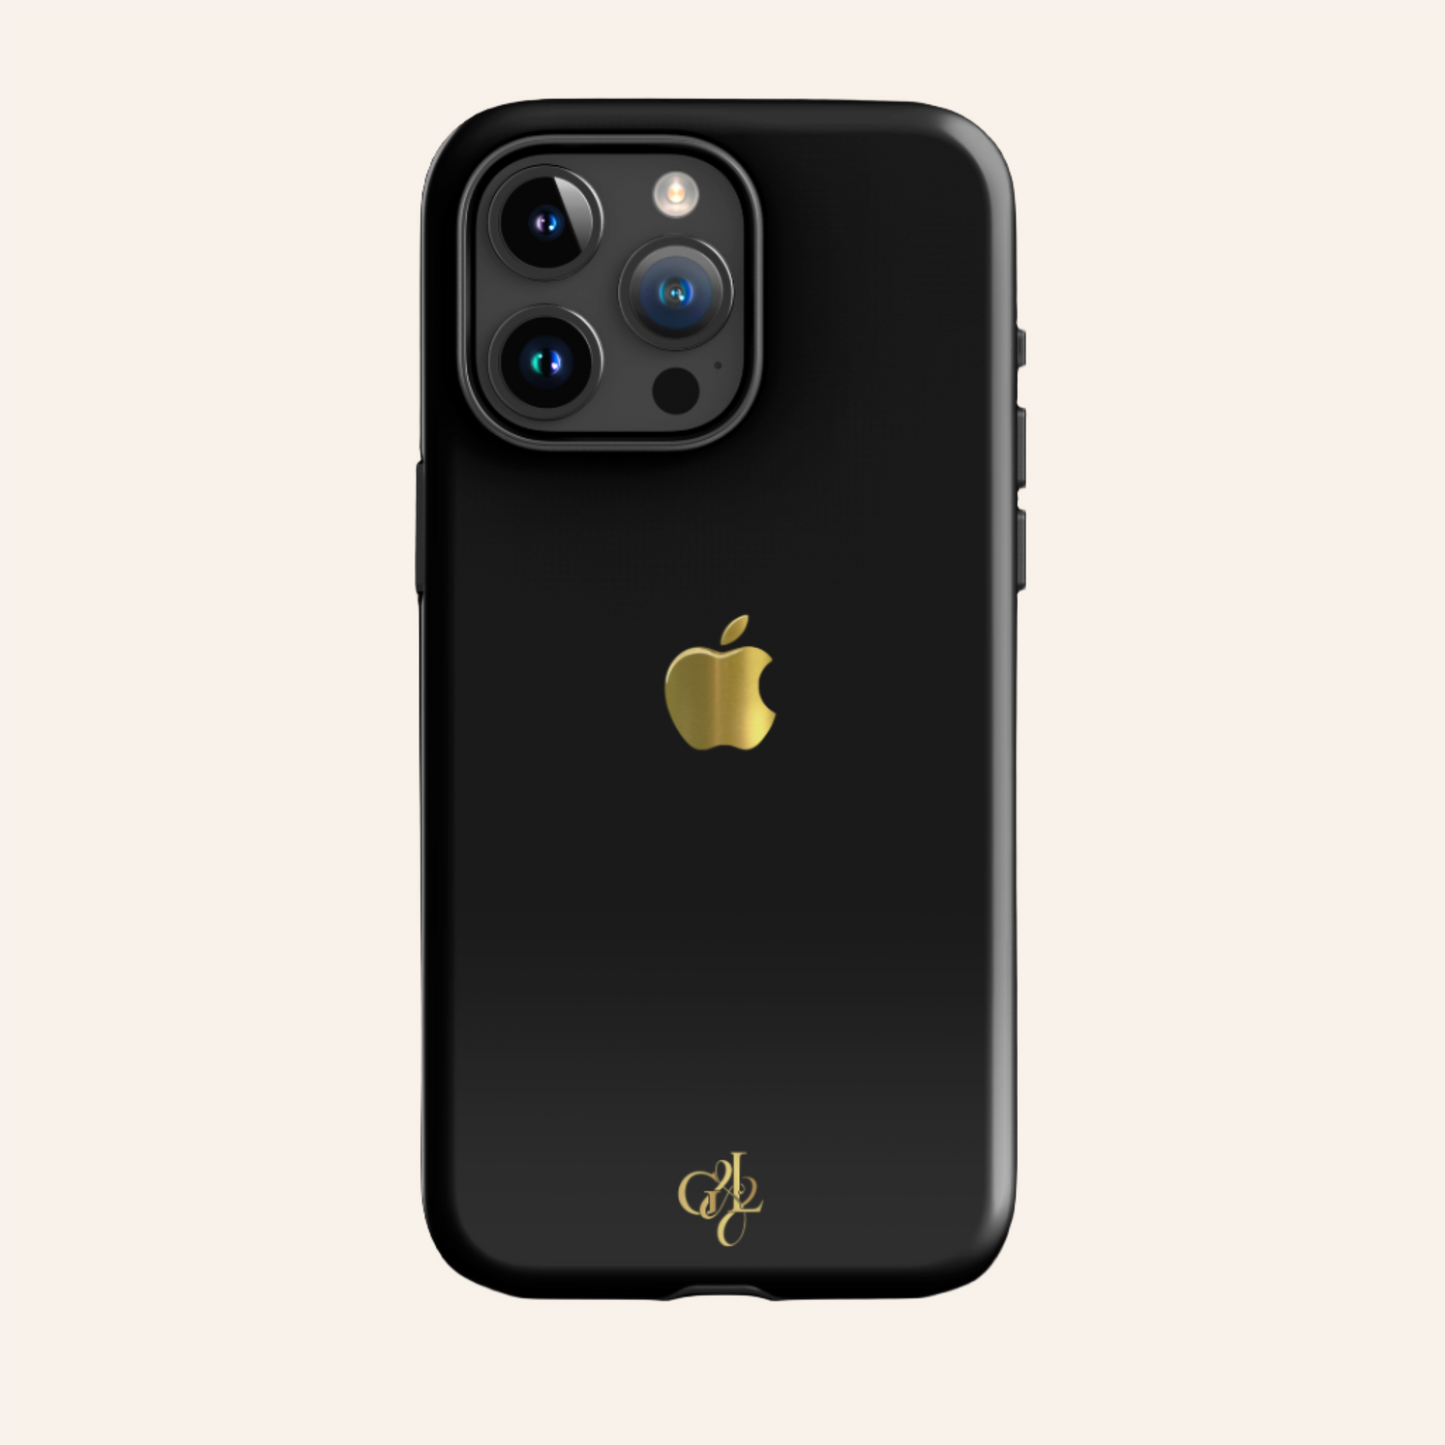 G&L iPhone Case